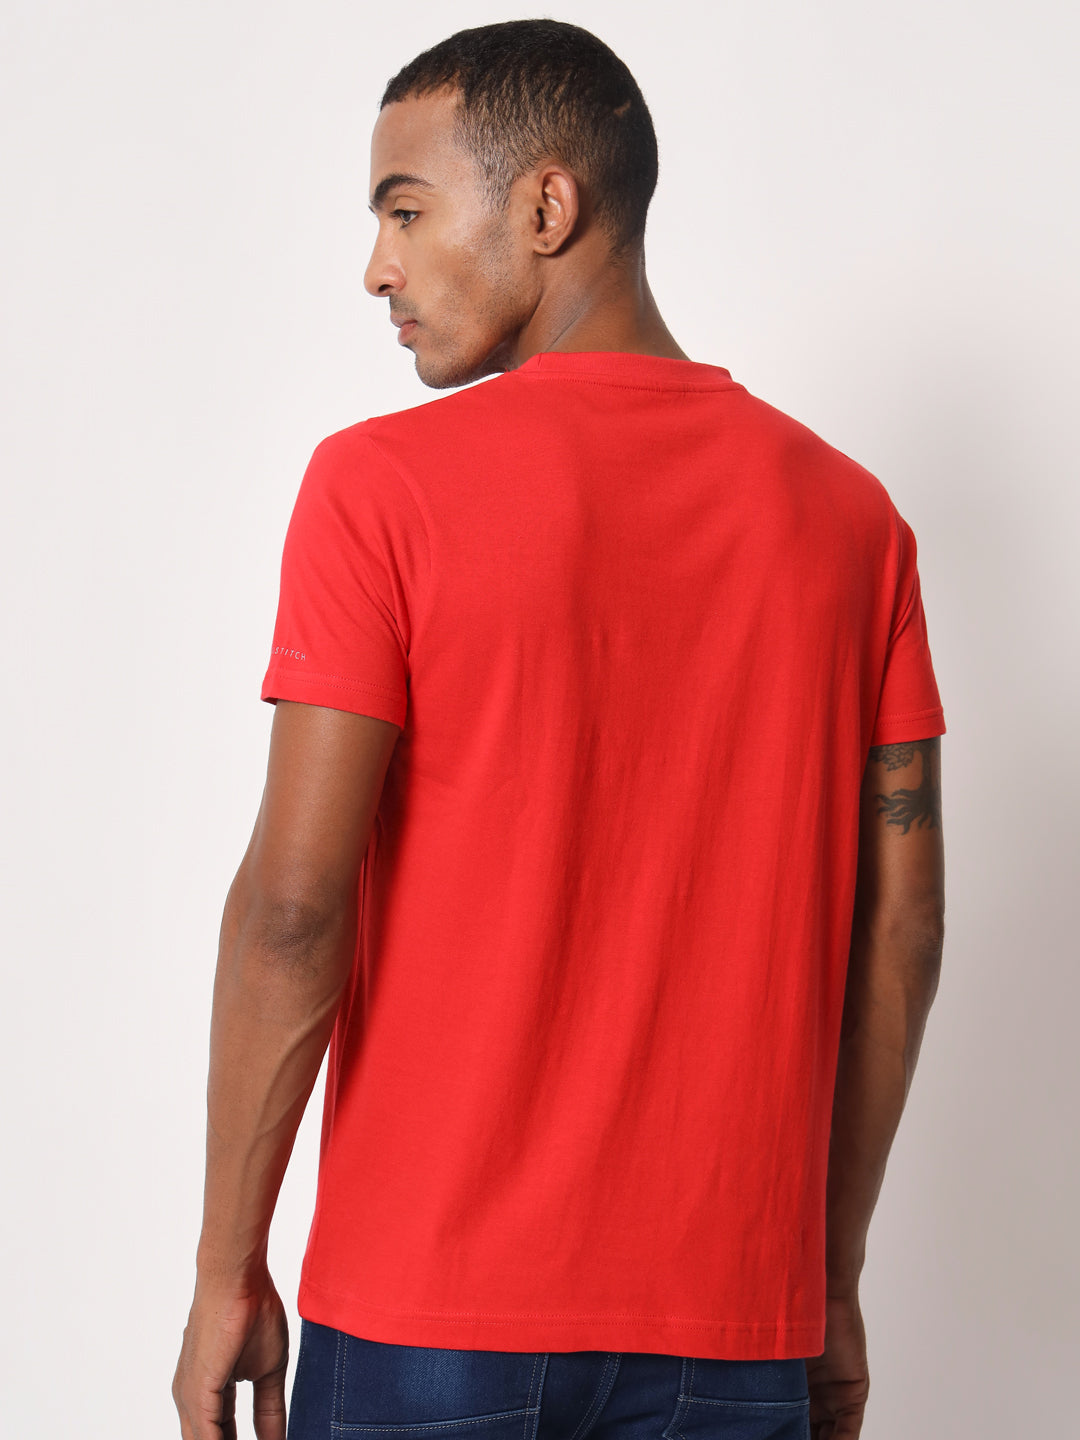 Solid Men Round Neck Half Sleeve Red Cotton T-shirt